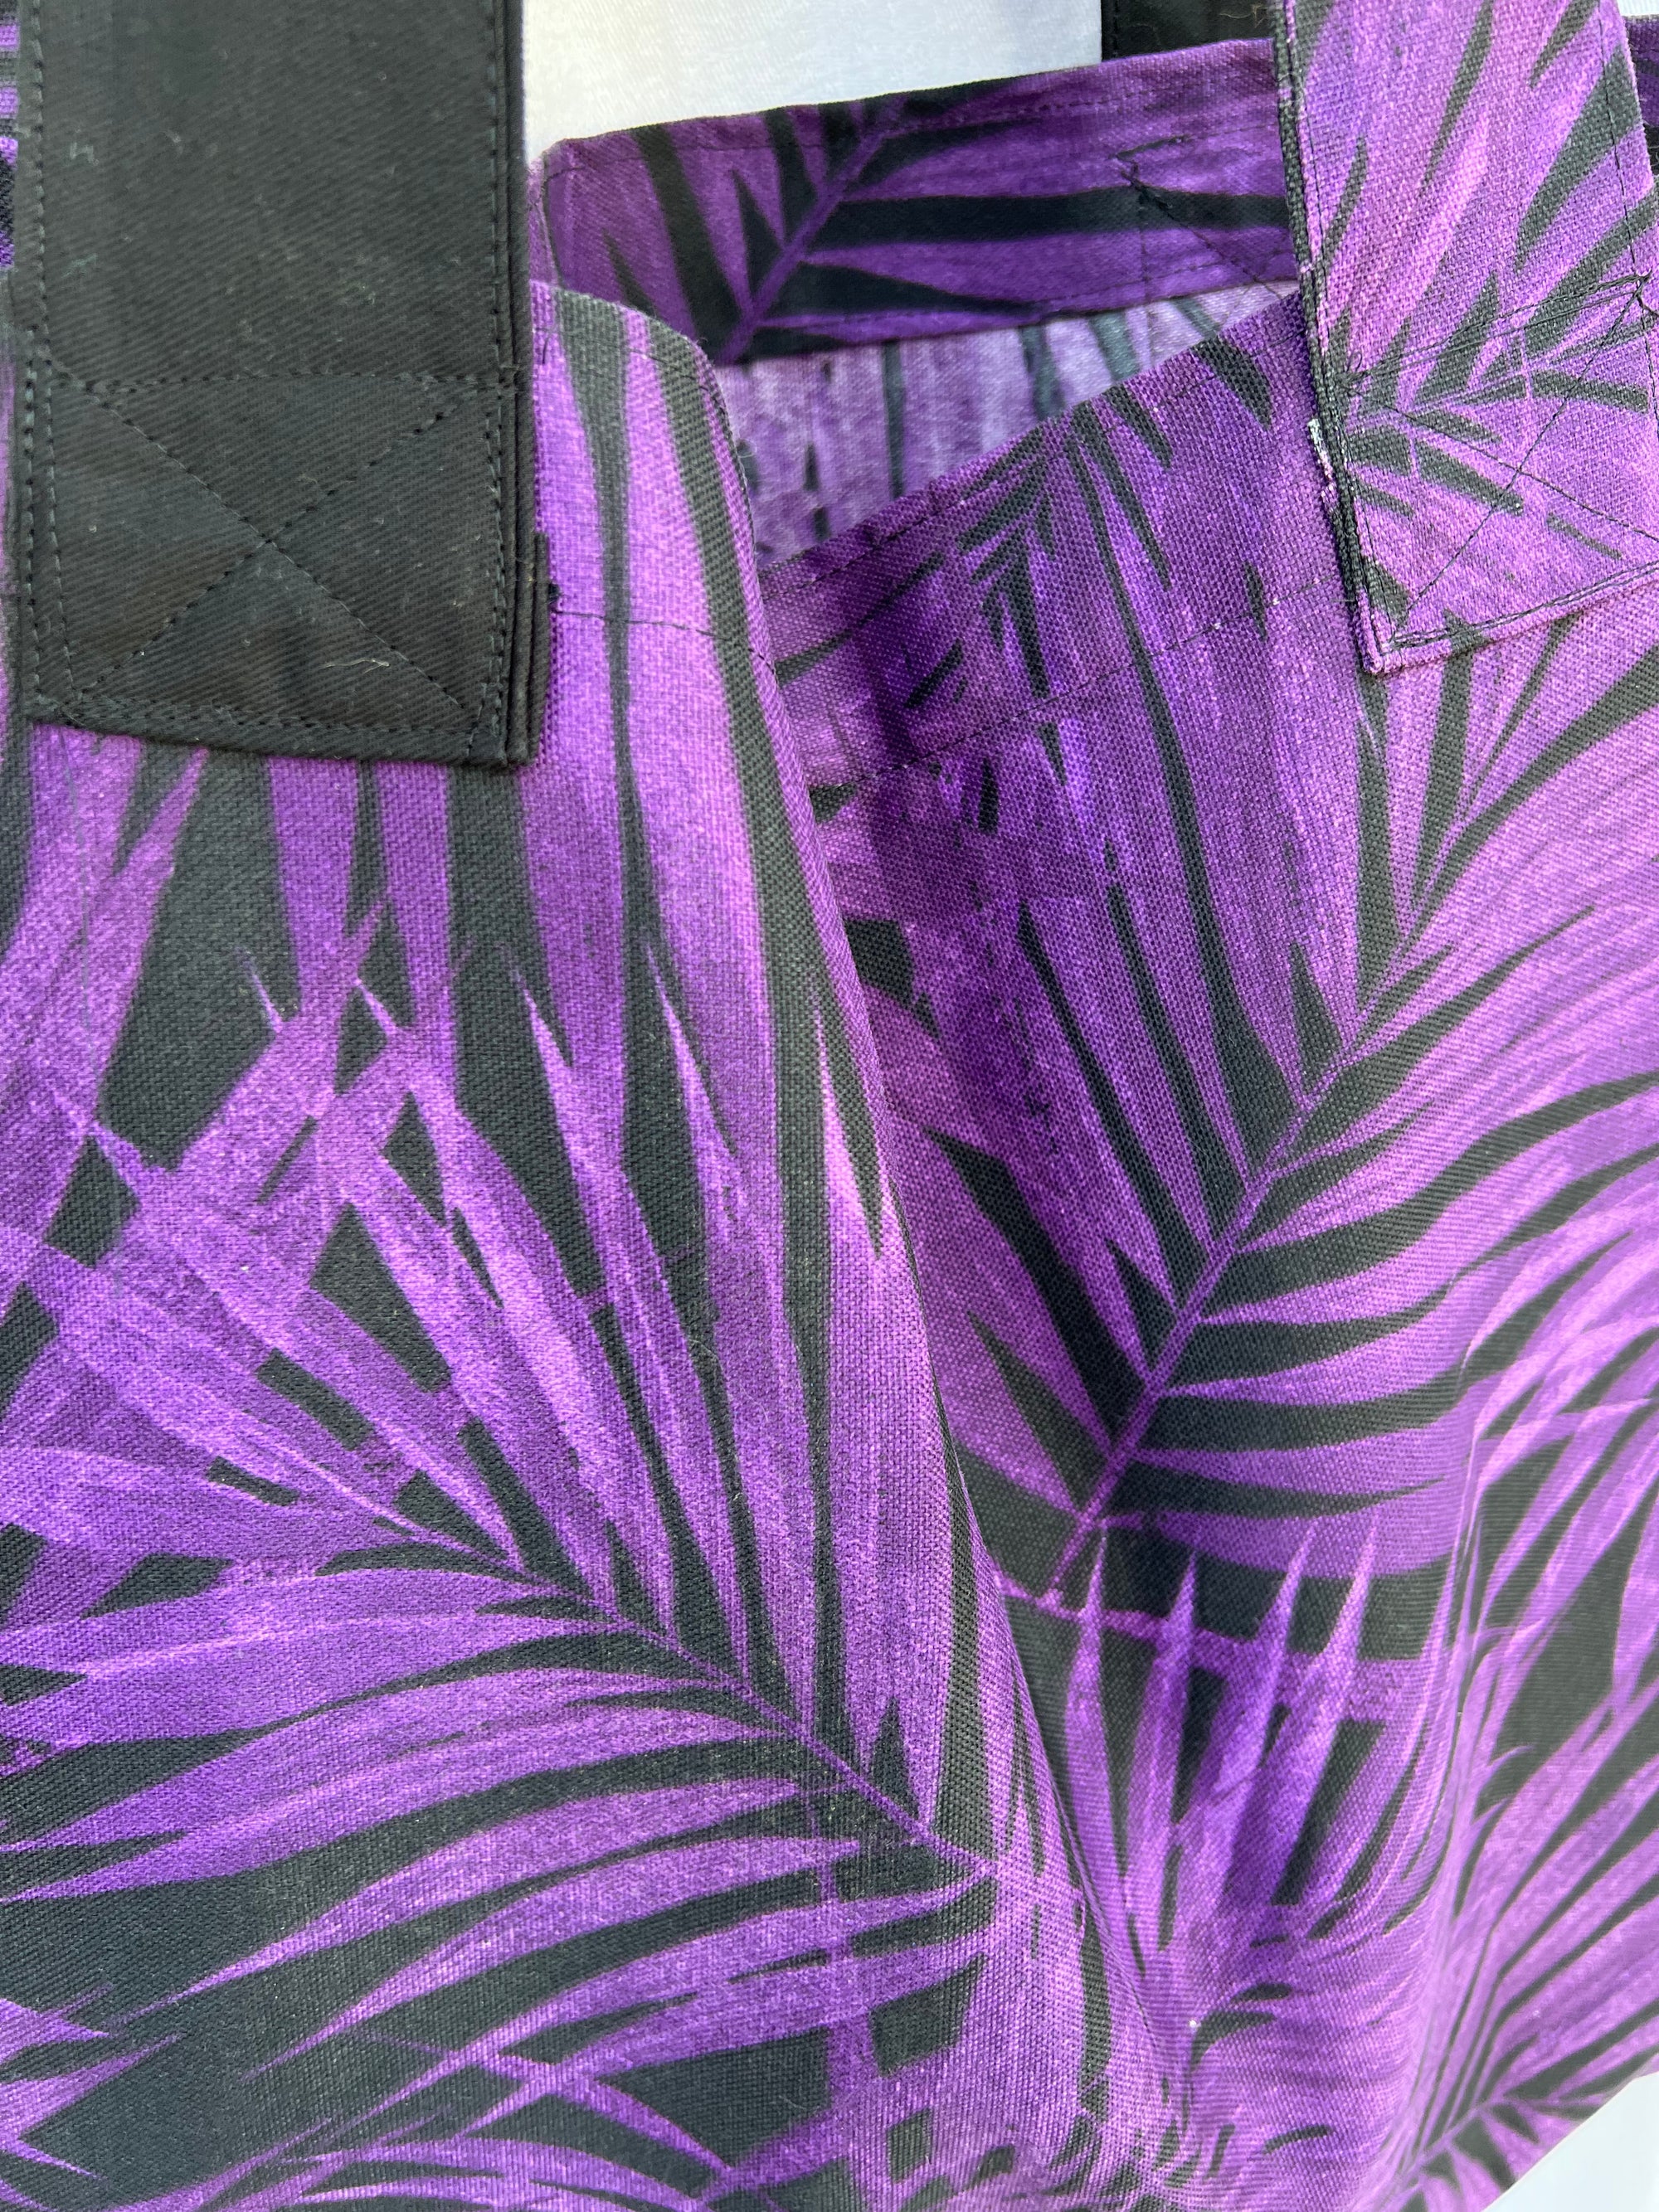 Carry all Grocery Market Tote Bag Waterproof Purple Black Leaves